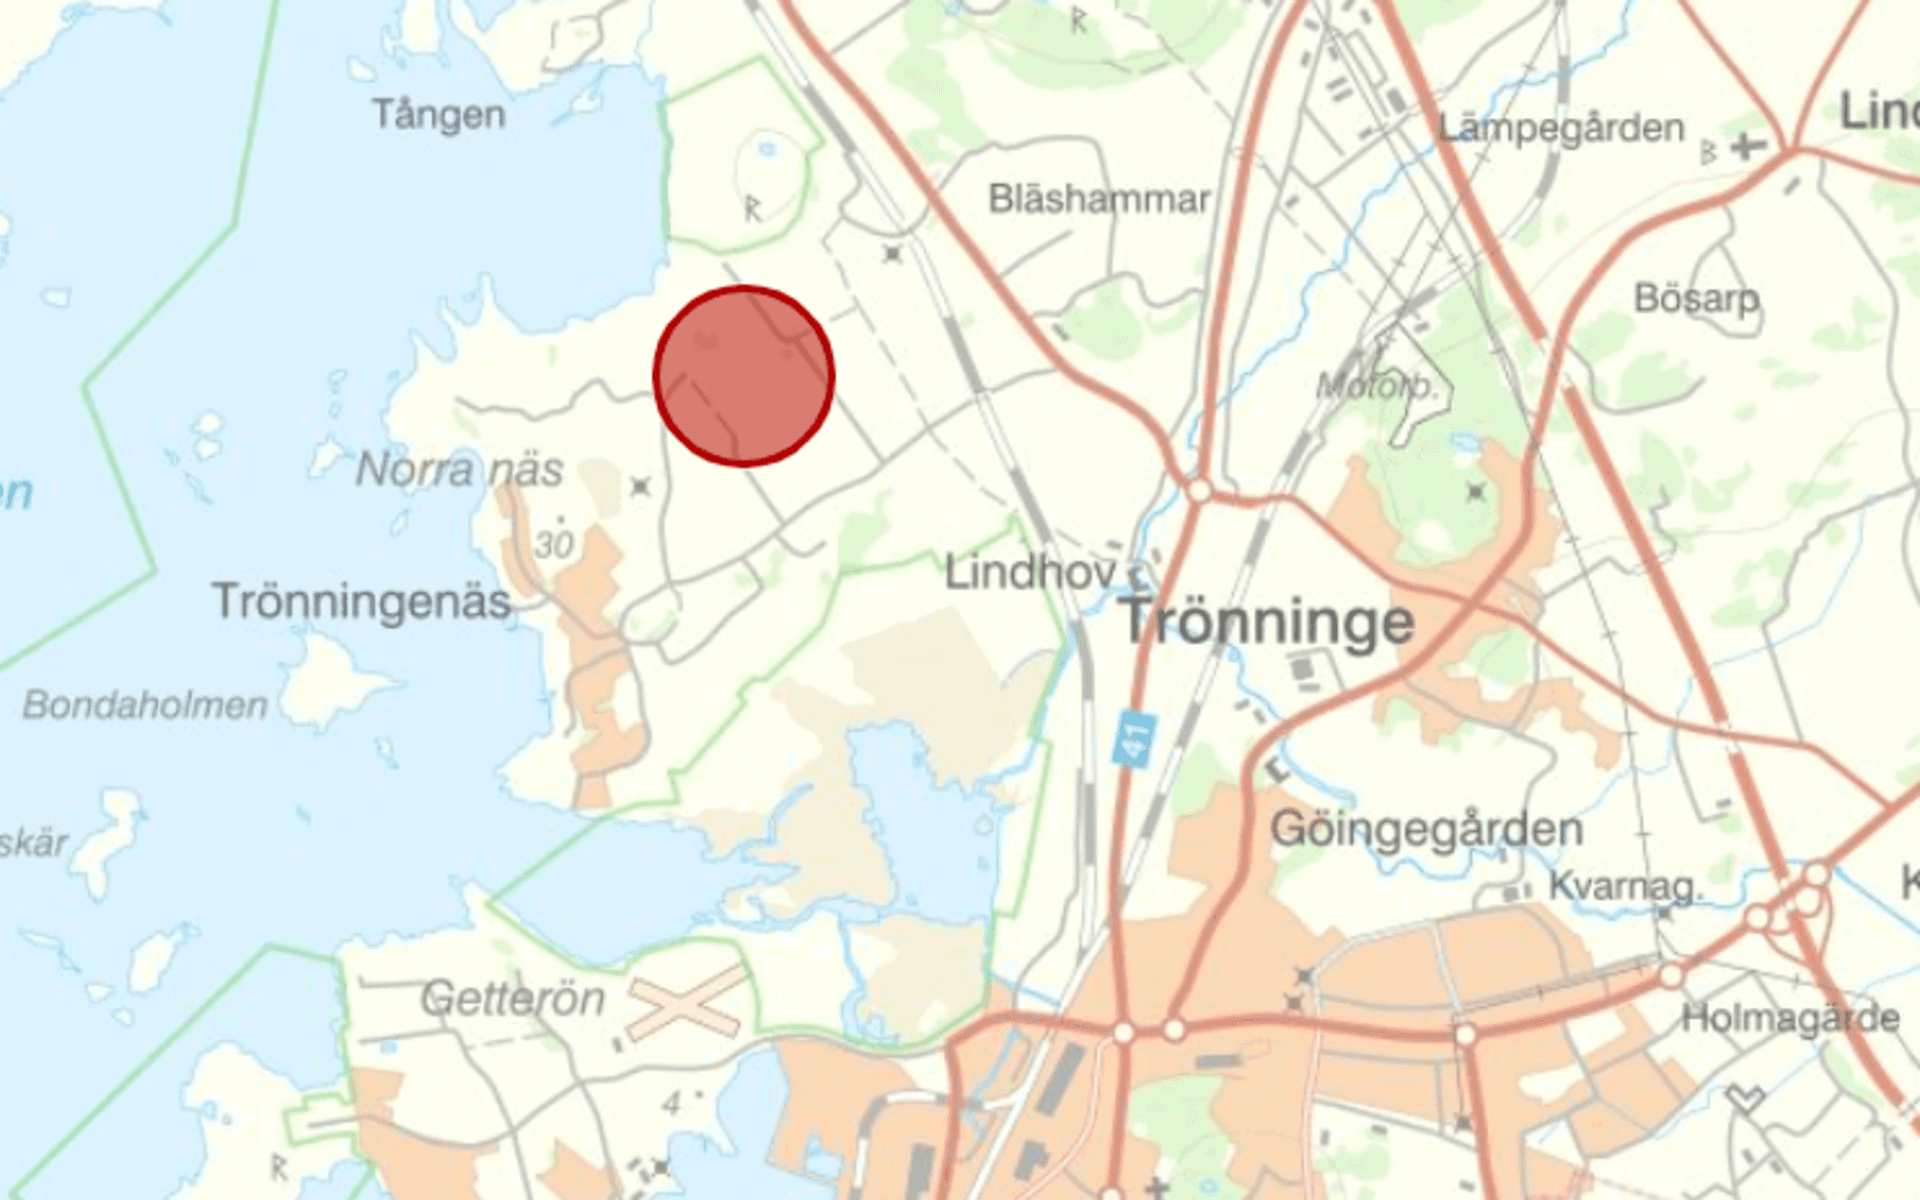 Kartan visar Trönningenäs med omnejd och den röda markeringen visar området som omfattas av detaljplaneförslaget för Trönningenäs inre, på ett ungefär.